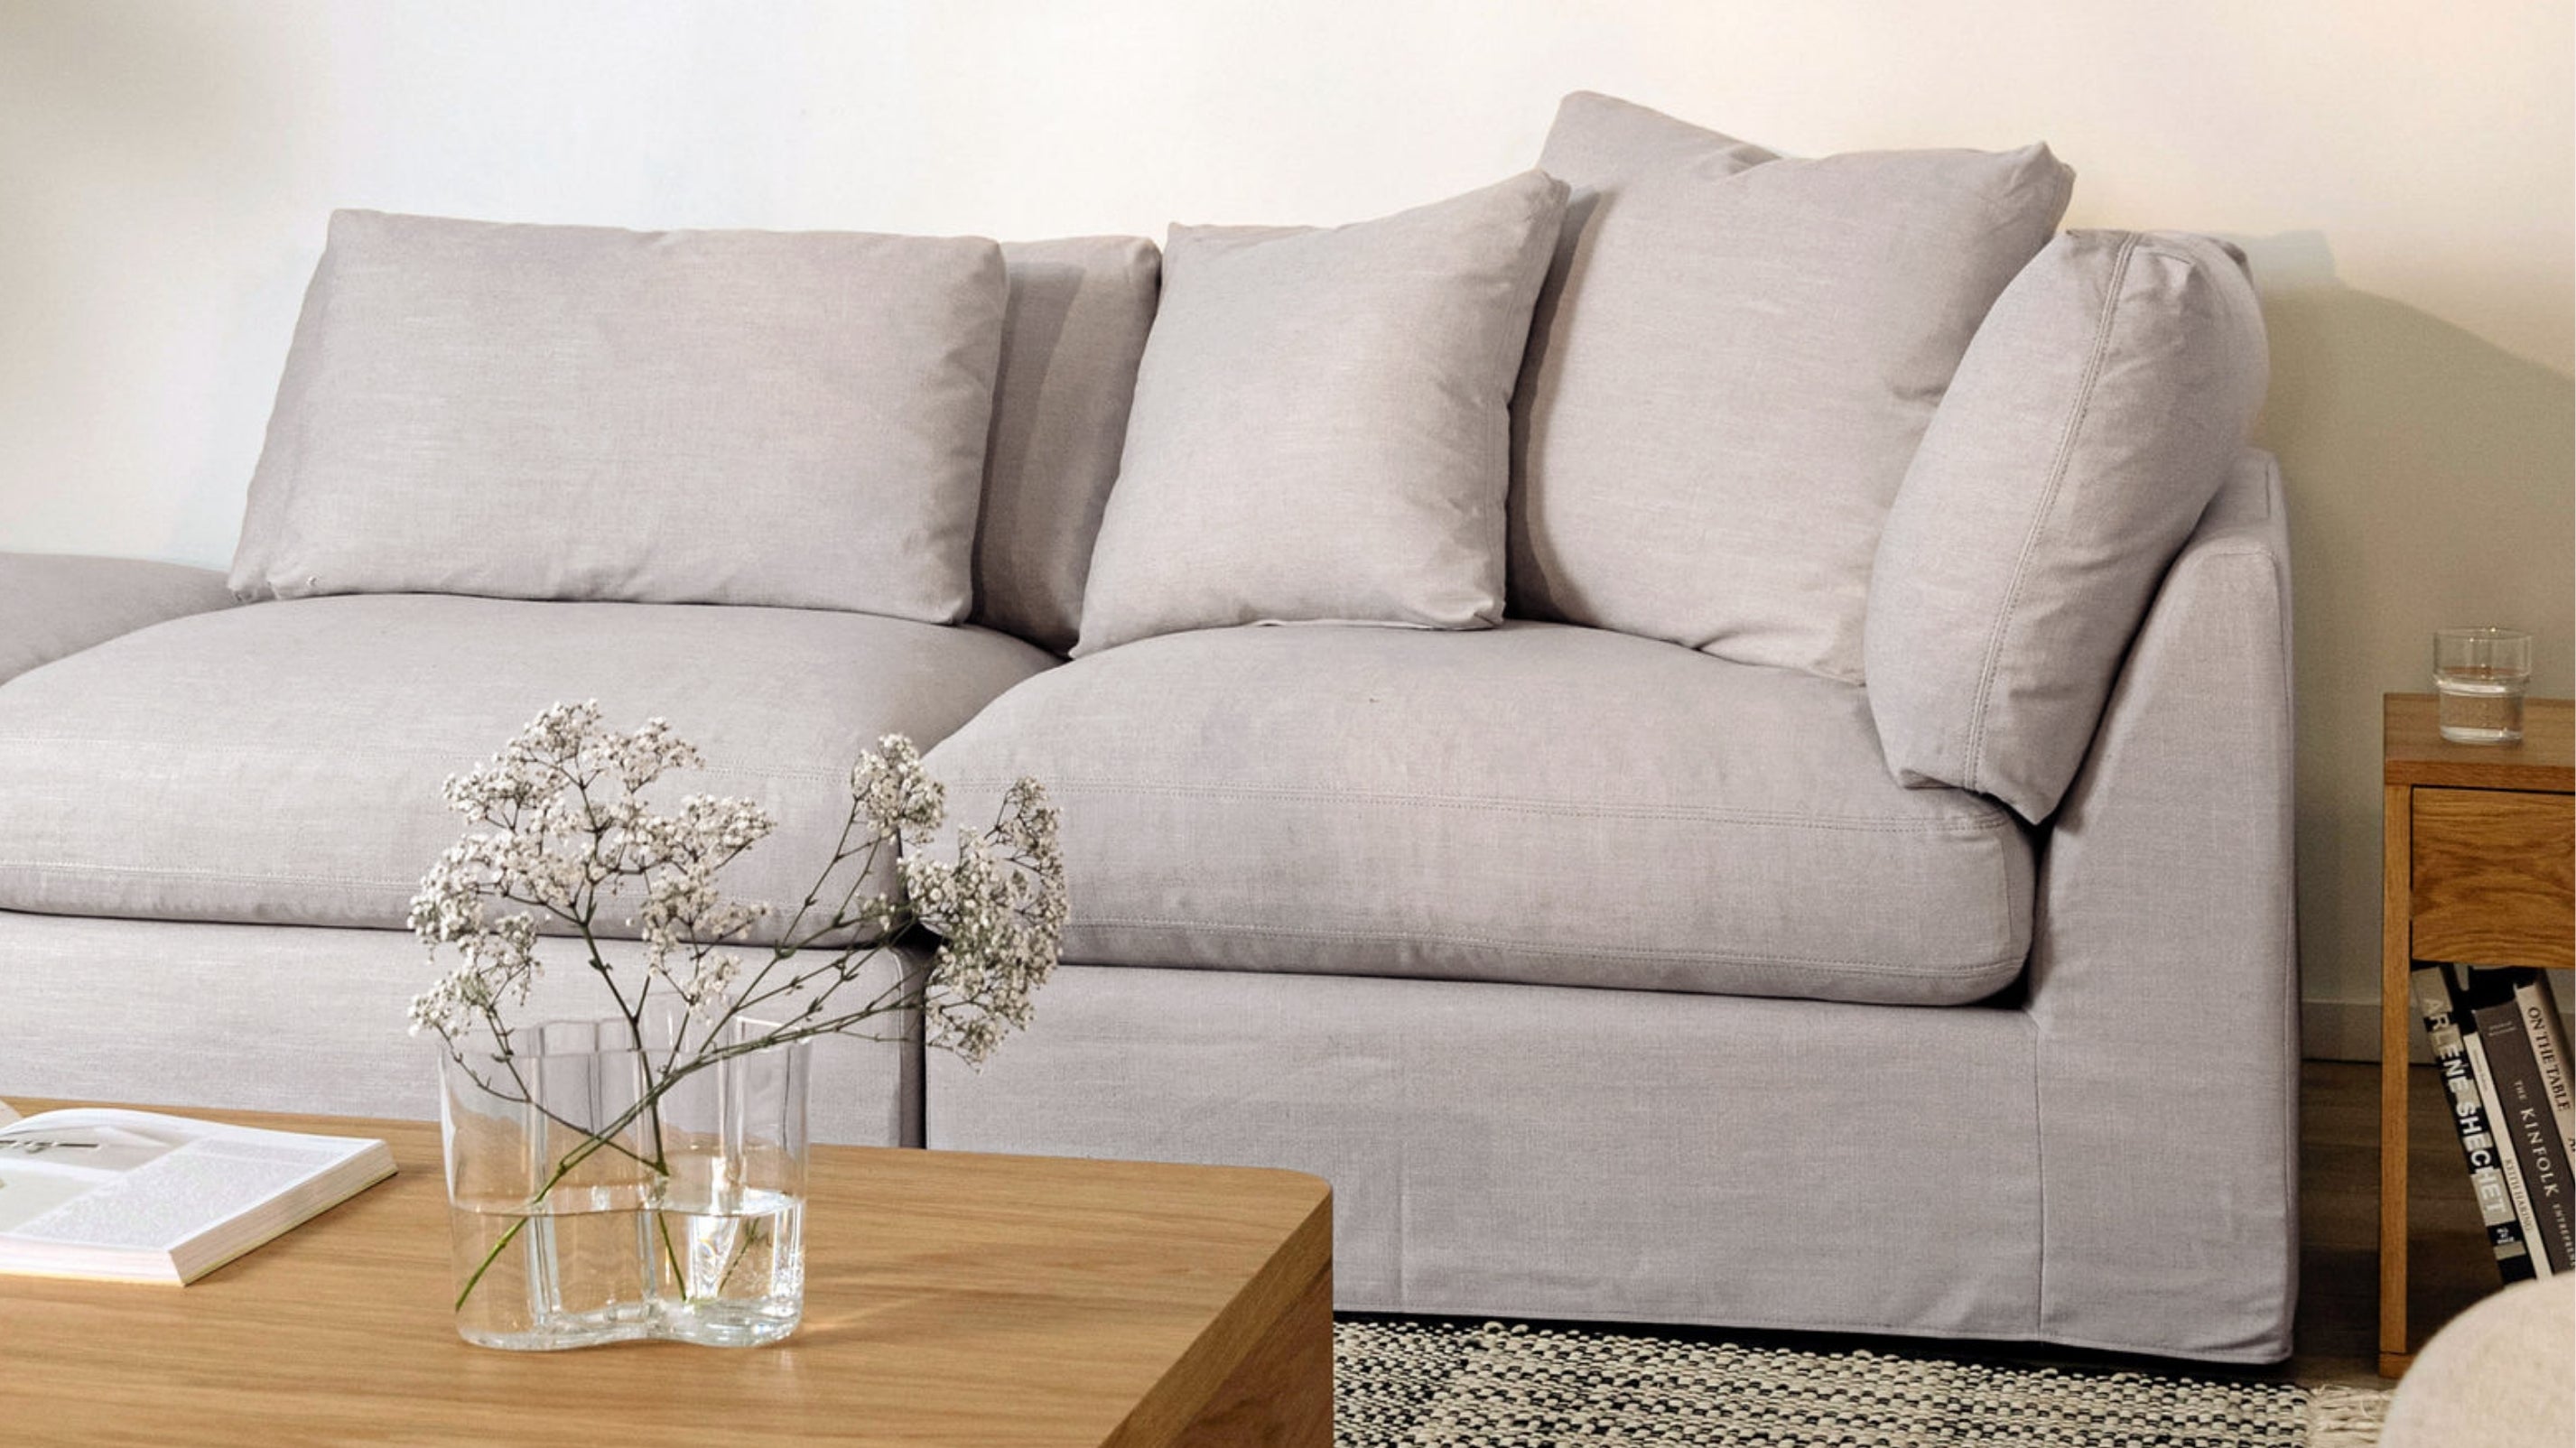 Get Together™ 3-Piece Modular Sofa, Large, Clay - Image 10